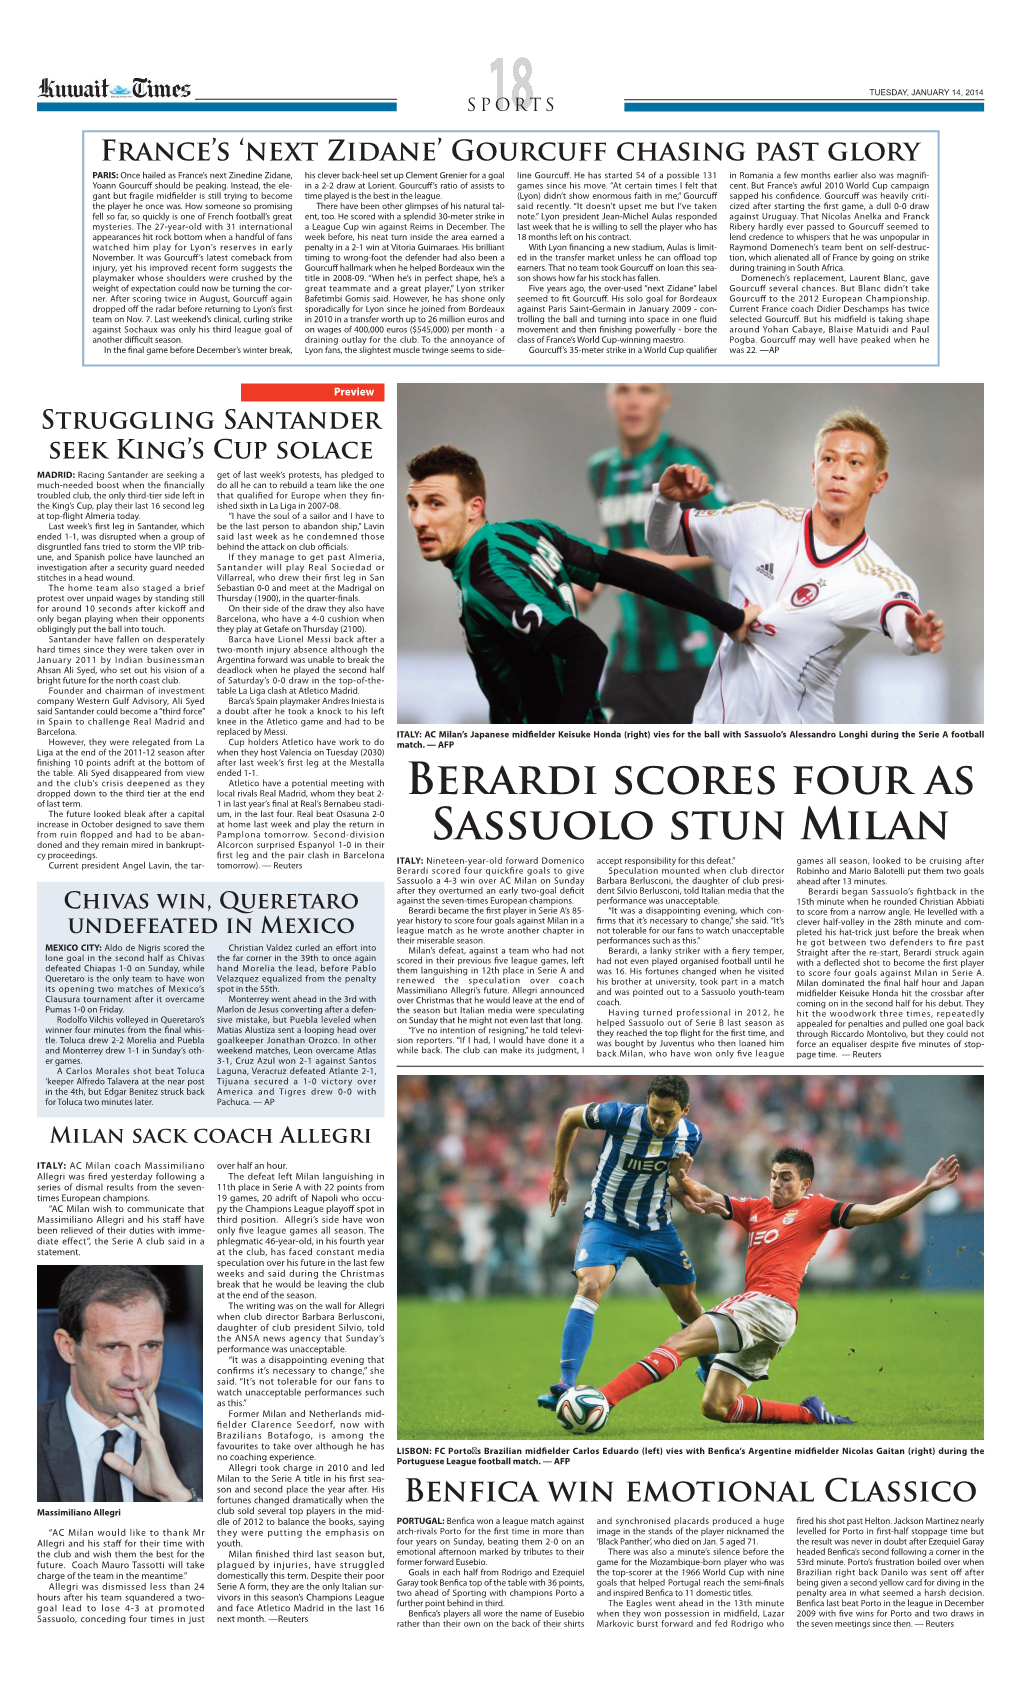 Berardi Scores FOUR AS Sassuolo Stun Milan